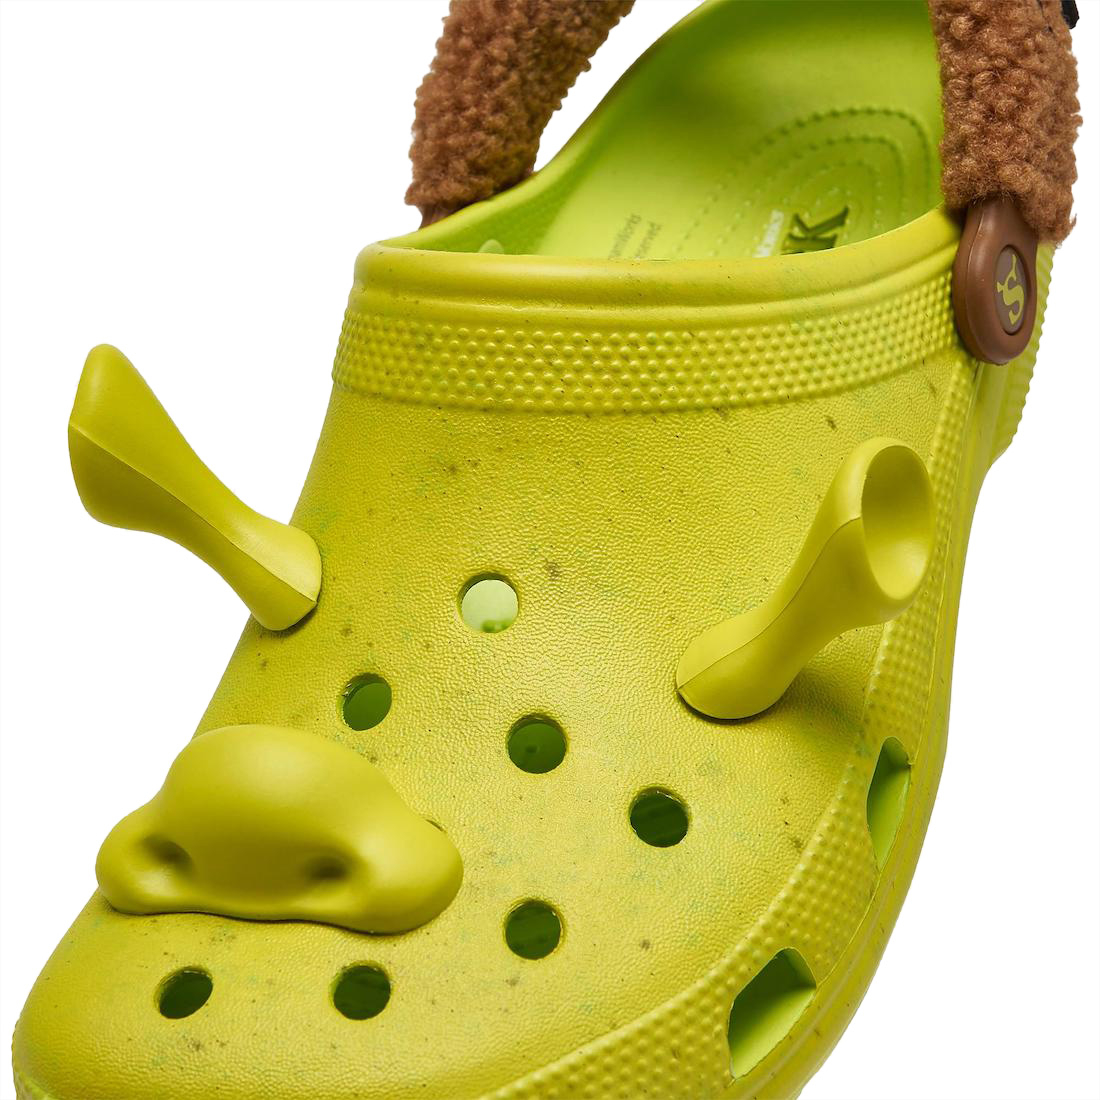 Shrek x Crocs Classic Clog 